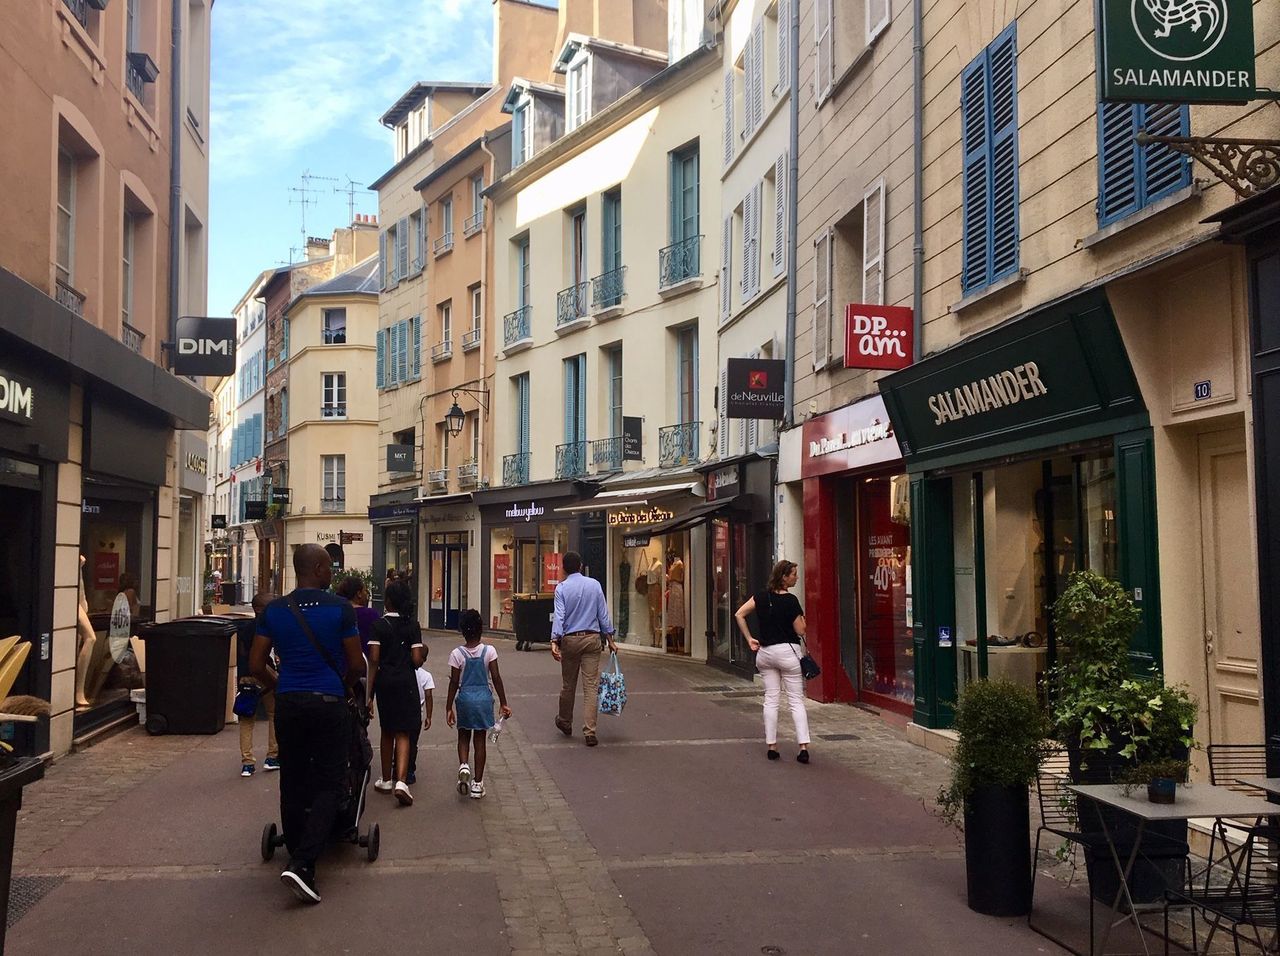 Si Saint-Germain-en-Laye compte près de 750 commerces, la municipalité a identifié des points d'amélioration. Elle souhaite notamment davantage de diversité et travailler sur l'esthétique des devantures. LP/Sébastien Birden